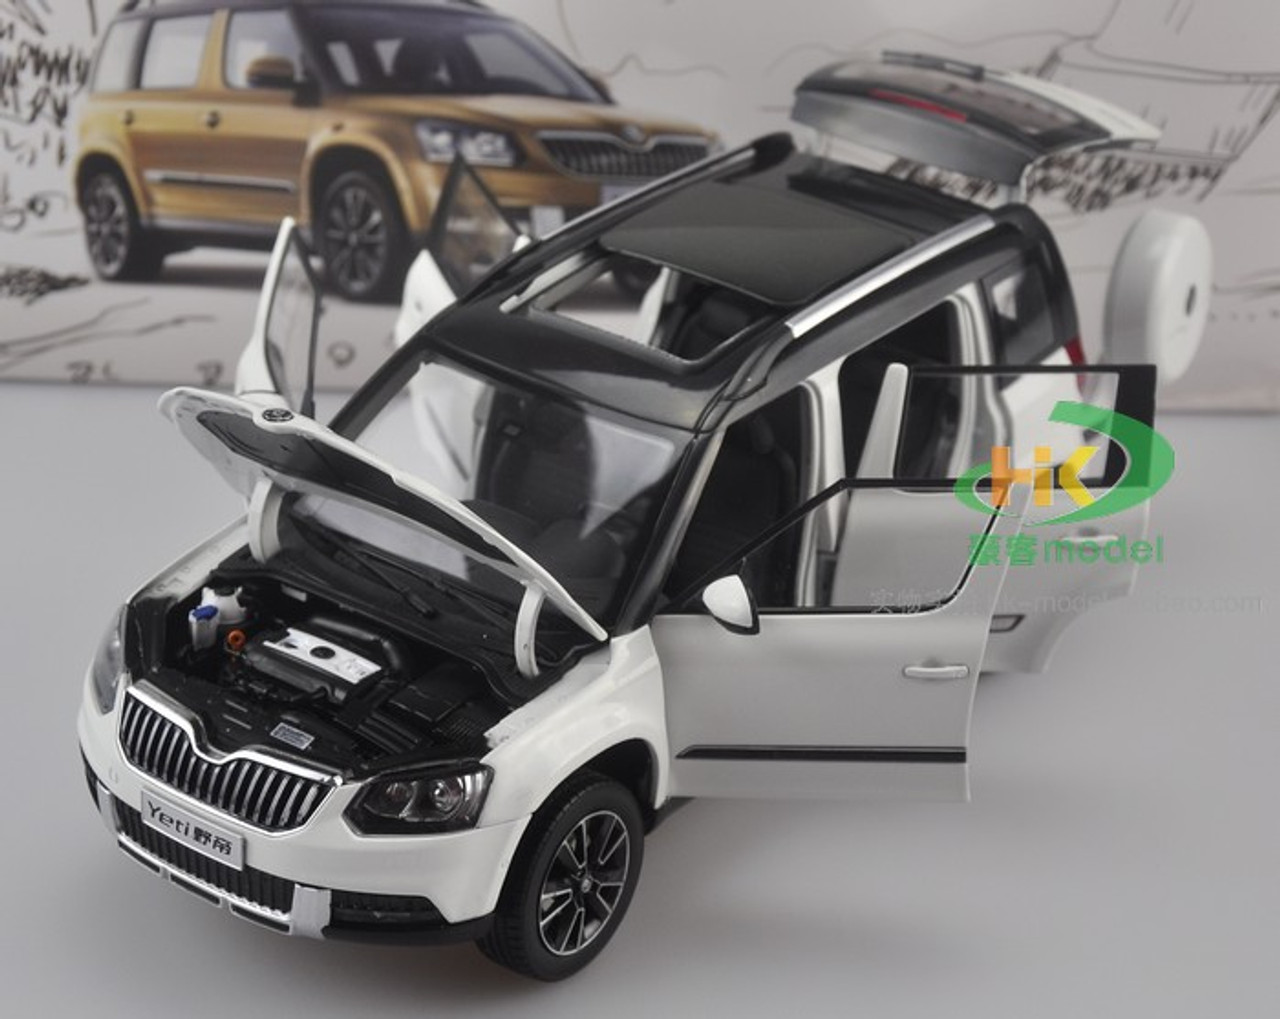 1/18 Dealer Edition Skoda Yeti (White) Diecast Car Model